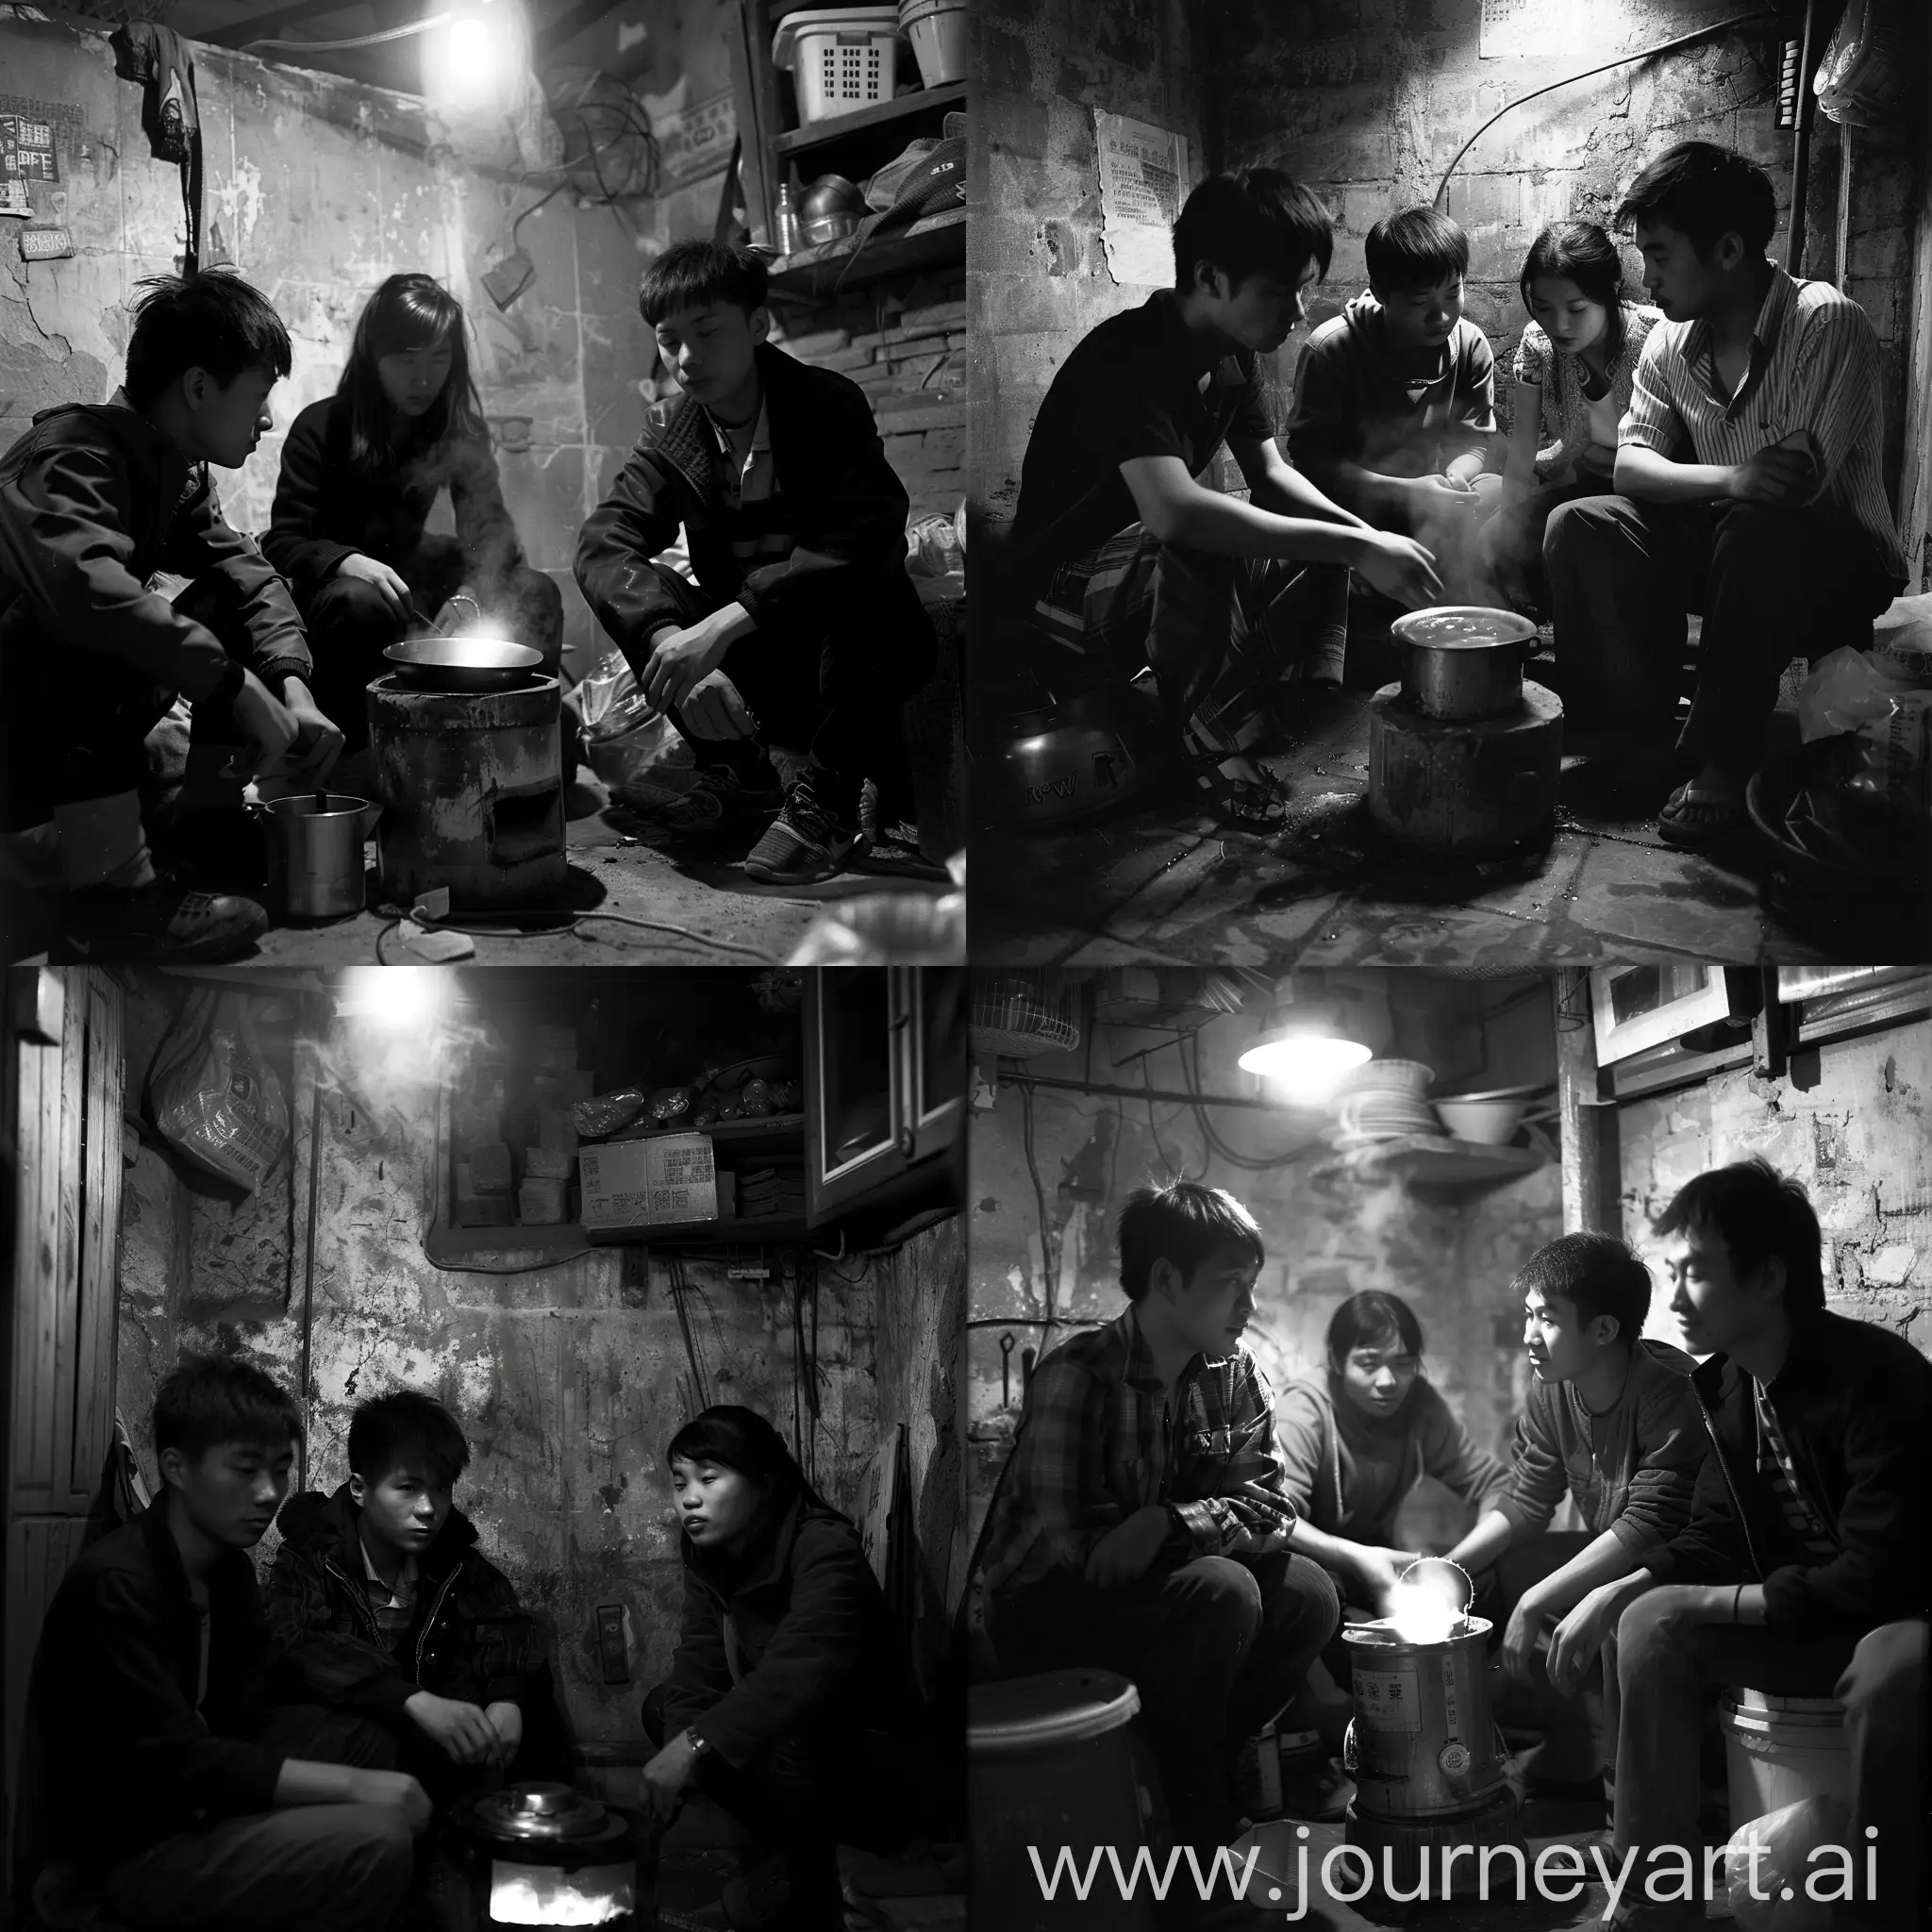 中国上海，两个男人，一个女人，都是都市青年，坐在昏暗破旧的小房间内，他们围着一个烧水的炉子坐，炉子下面发出微微火光。